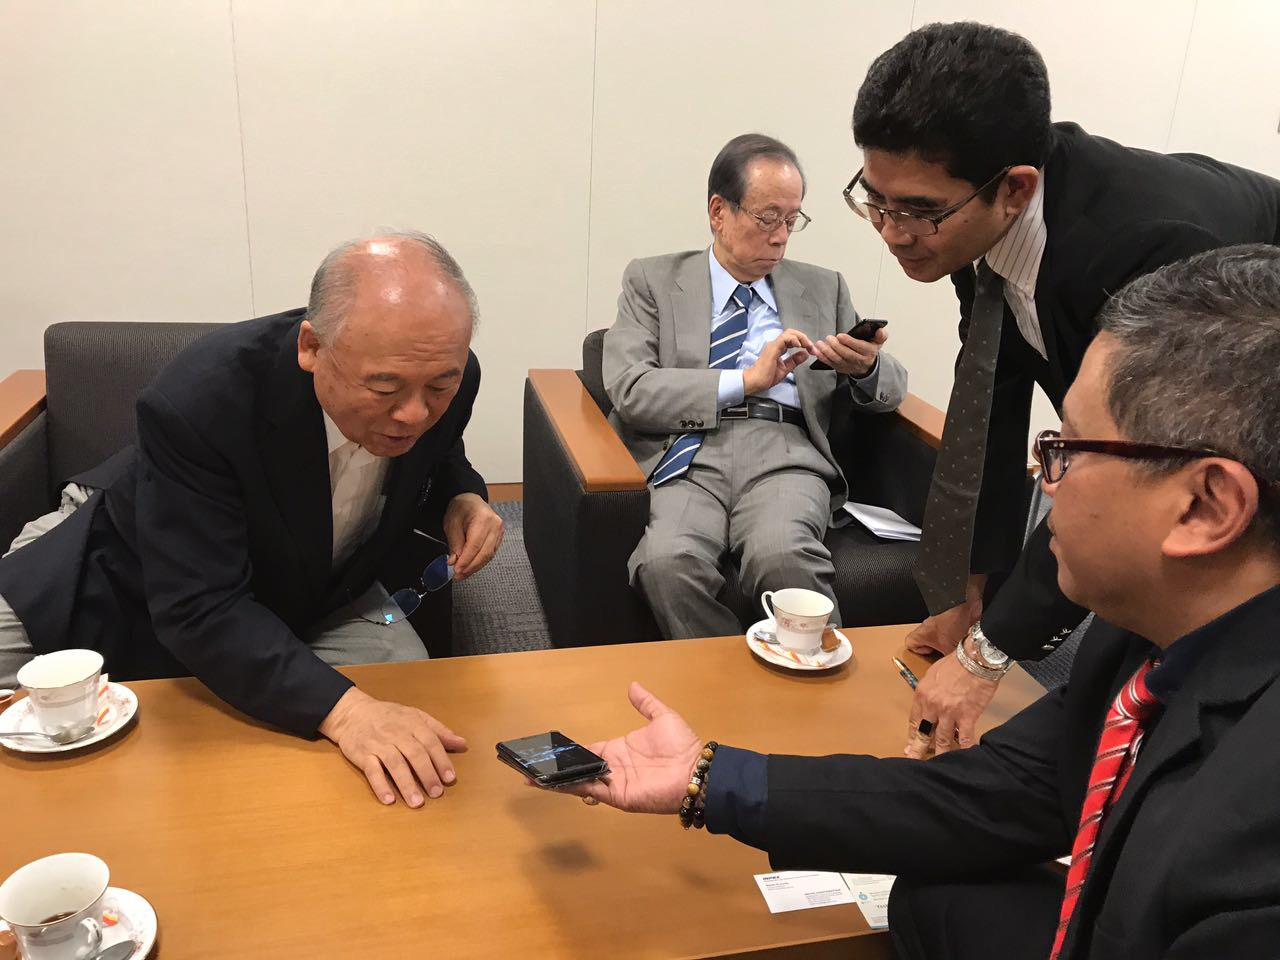 KUNJUNGAN: Sekjen PDIP Hasto Kristiyanto menunjukkan sesuatu kepada politisi senior Jepang.